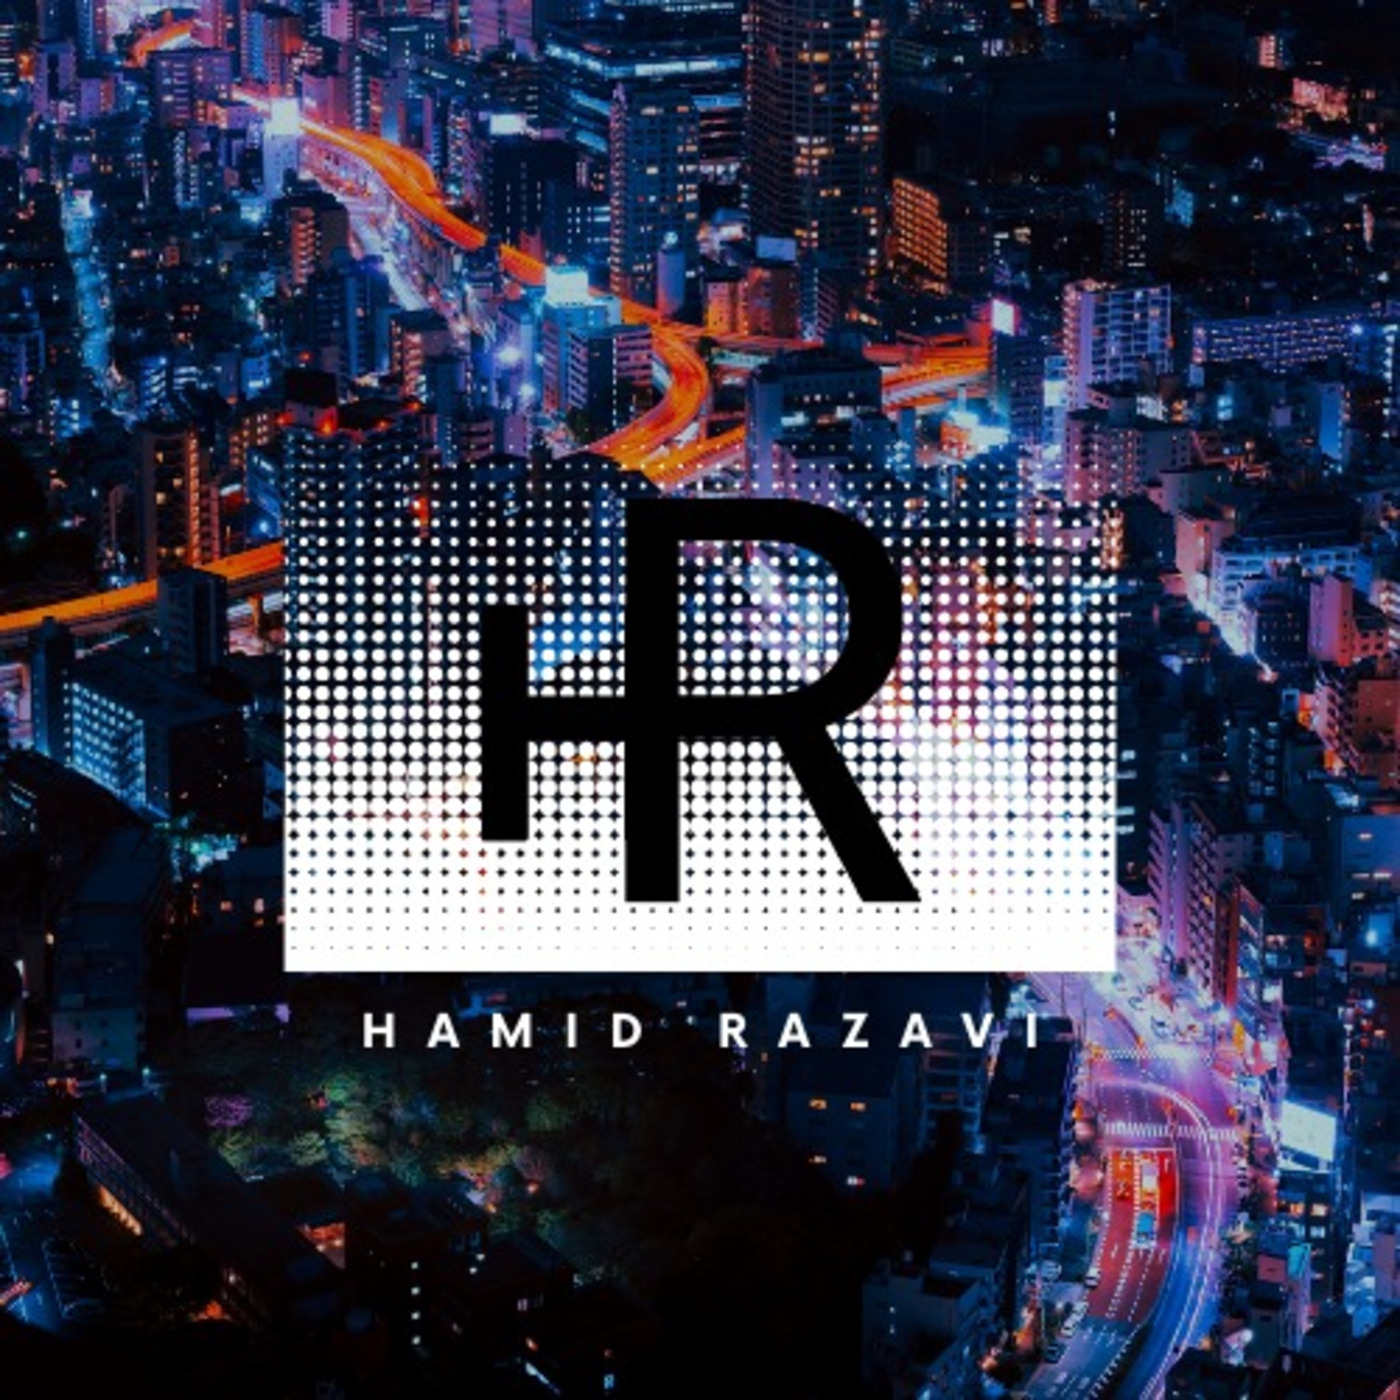 Hamid Razavi Presents #Radio